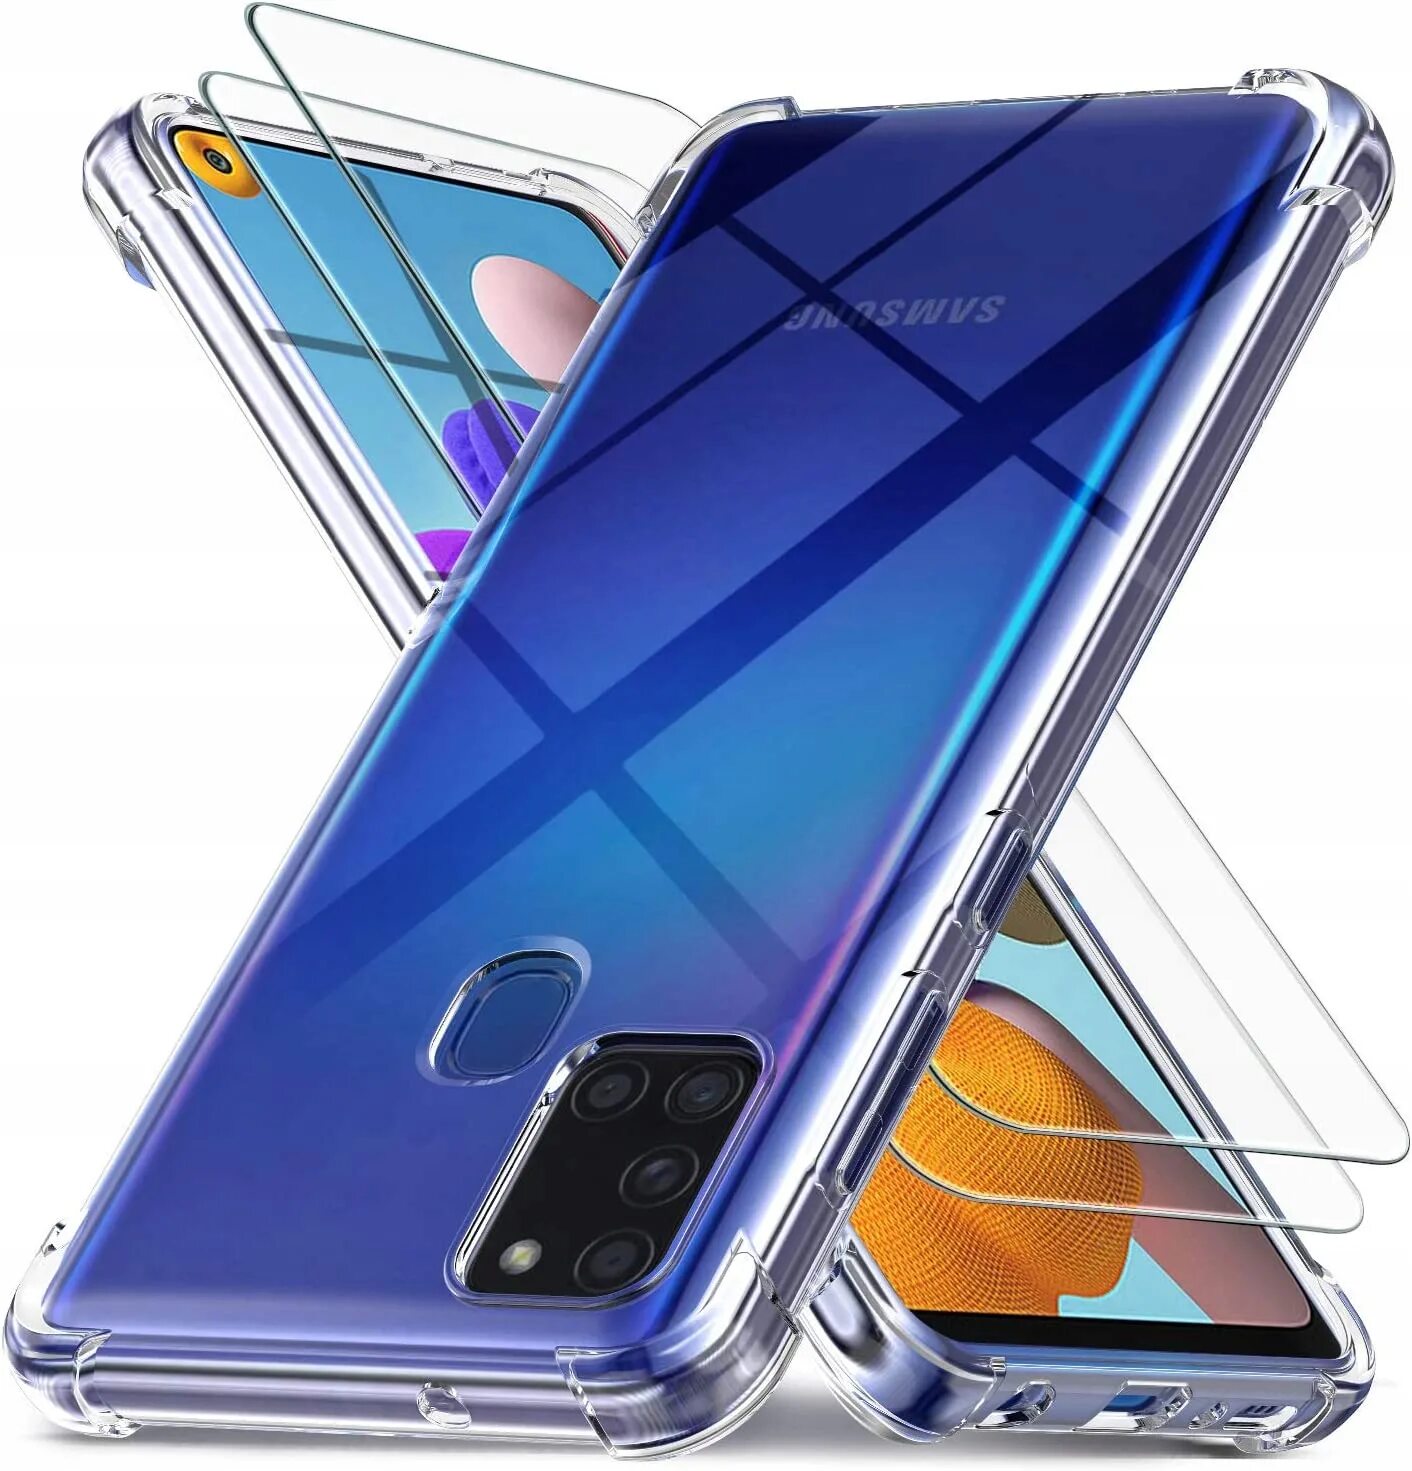 Samsung galaxy s21 стекло. Samsung a21s. Galaxy s21. Samsung Galaxy a21. Samsung Galaxy s21 transparent Case.